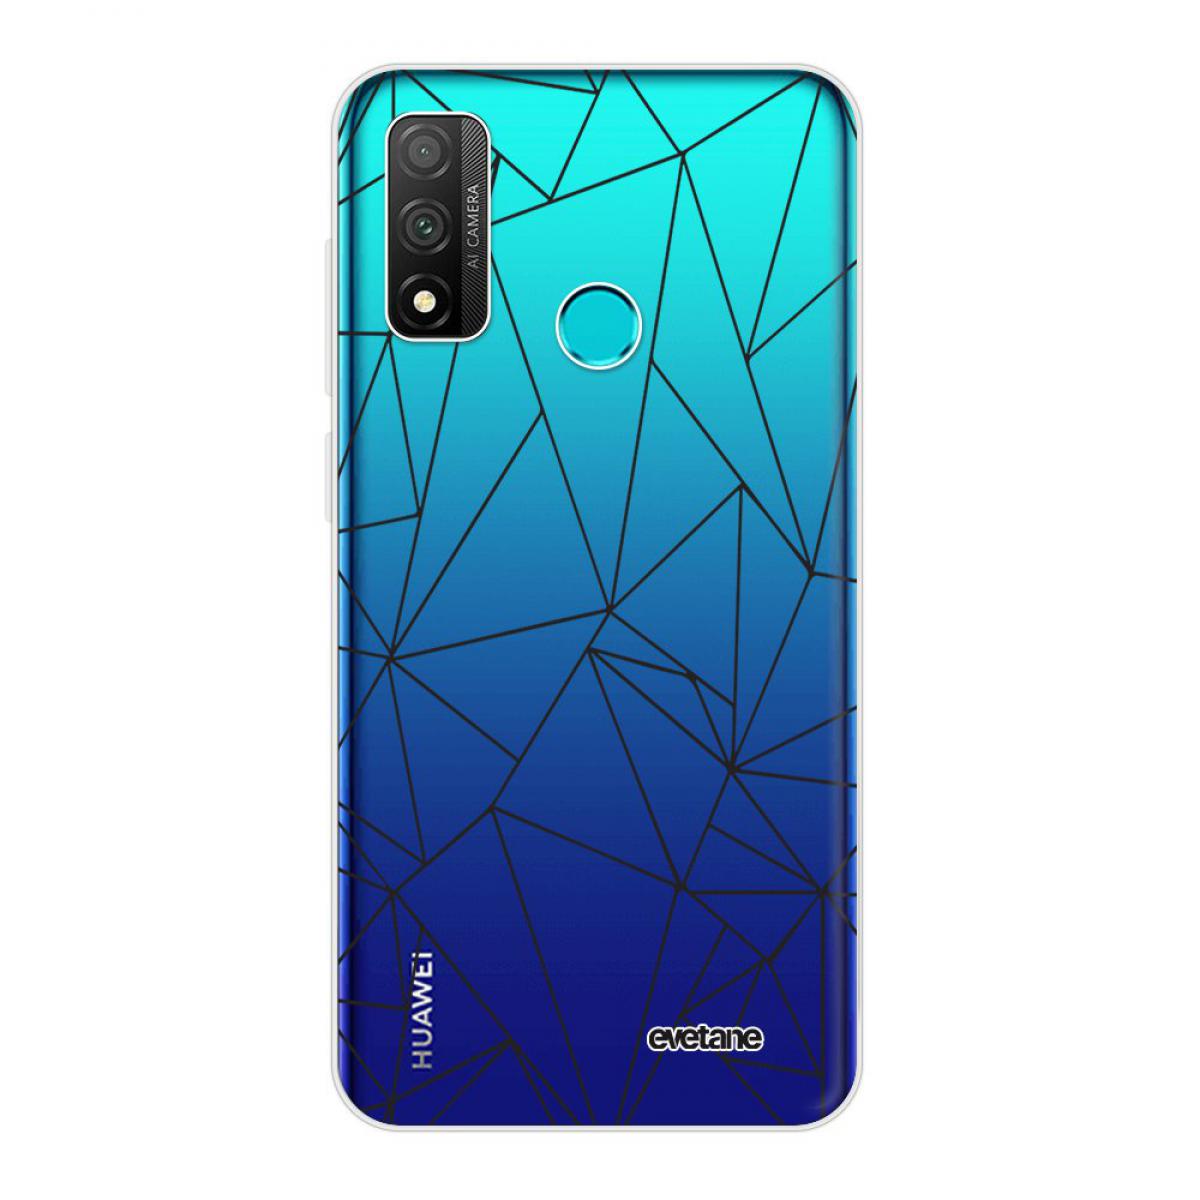 Evetane - Coque Huawei Psmart 2020 souple silicone transparente - Coque, étui smartphone